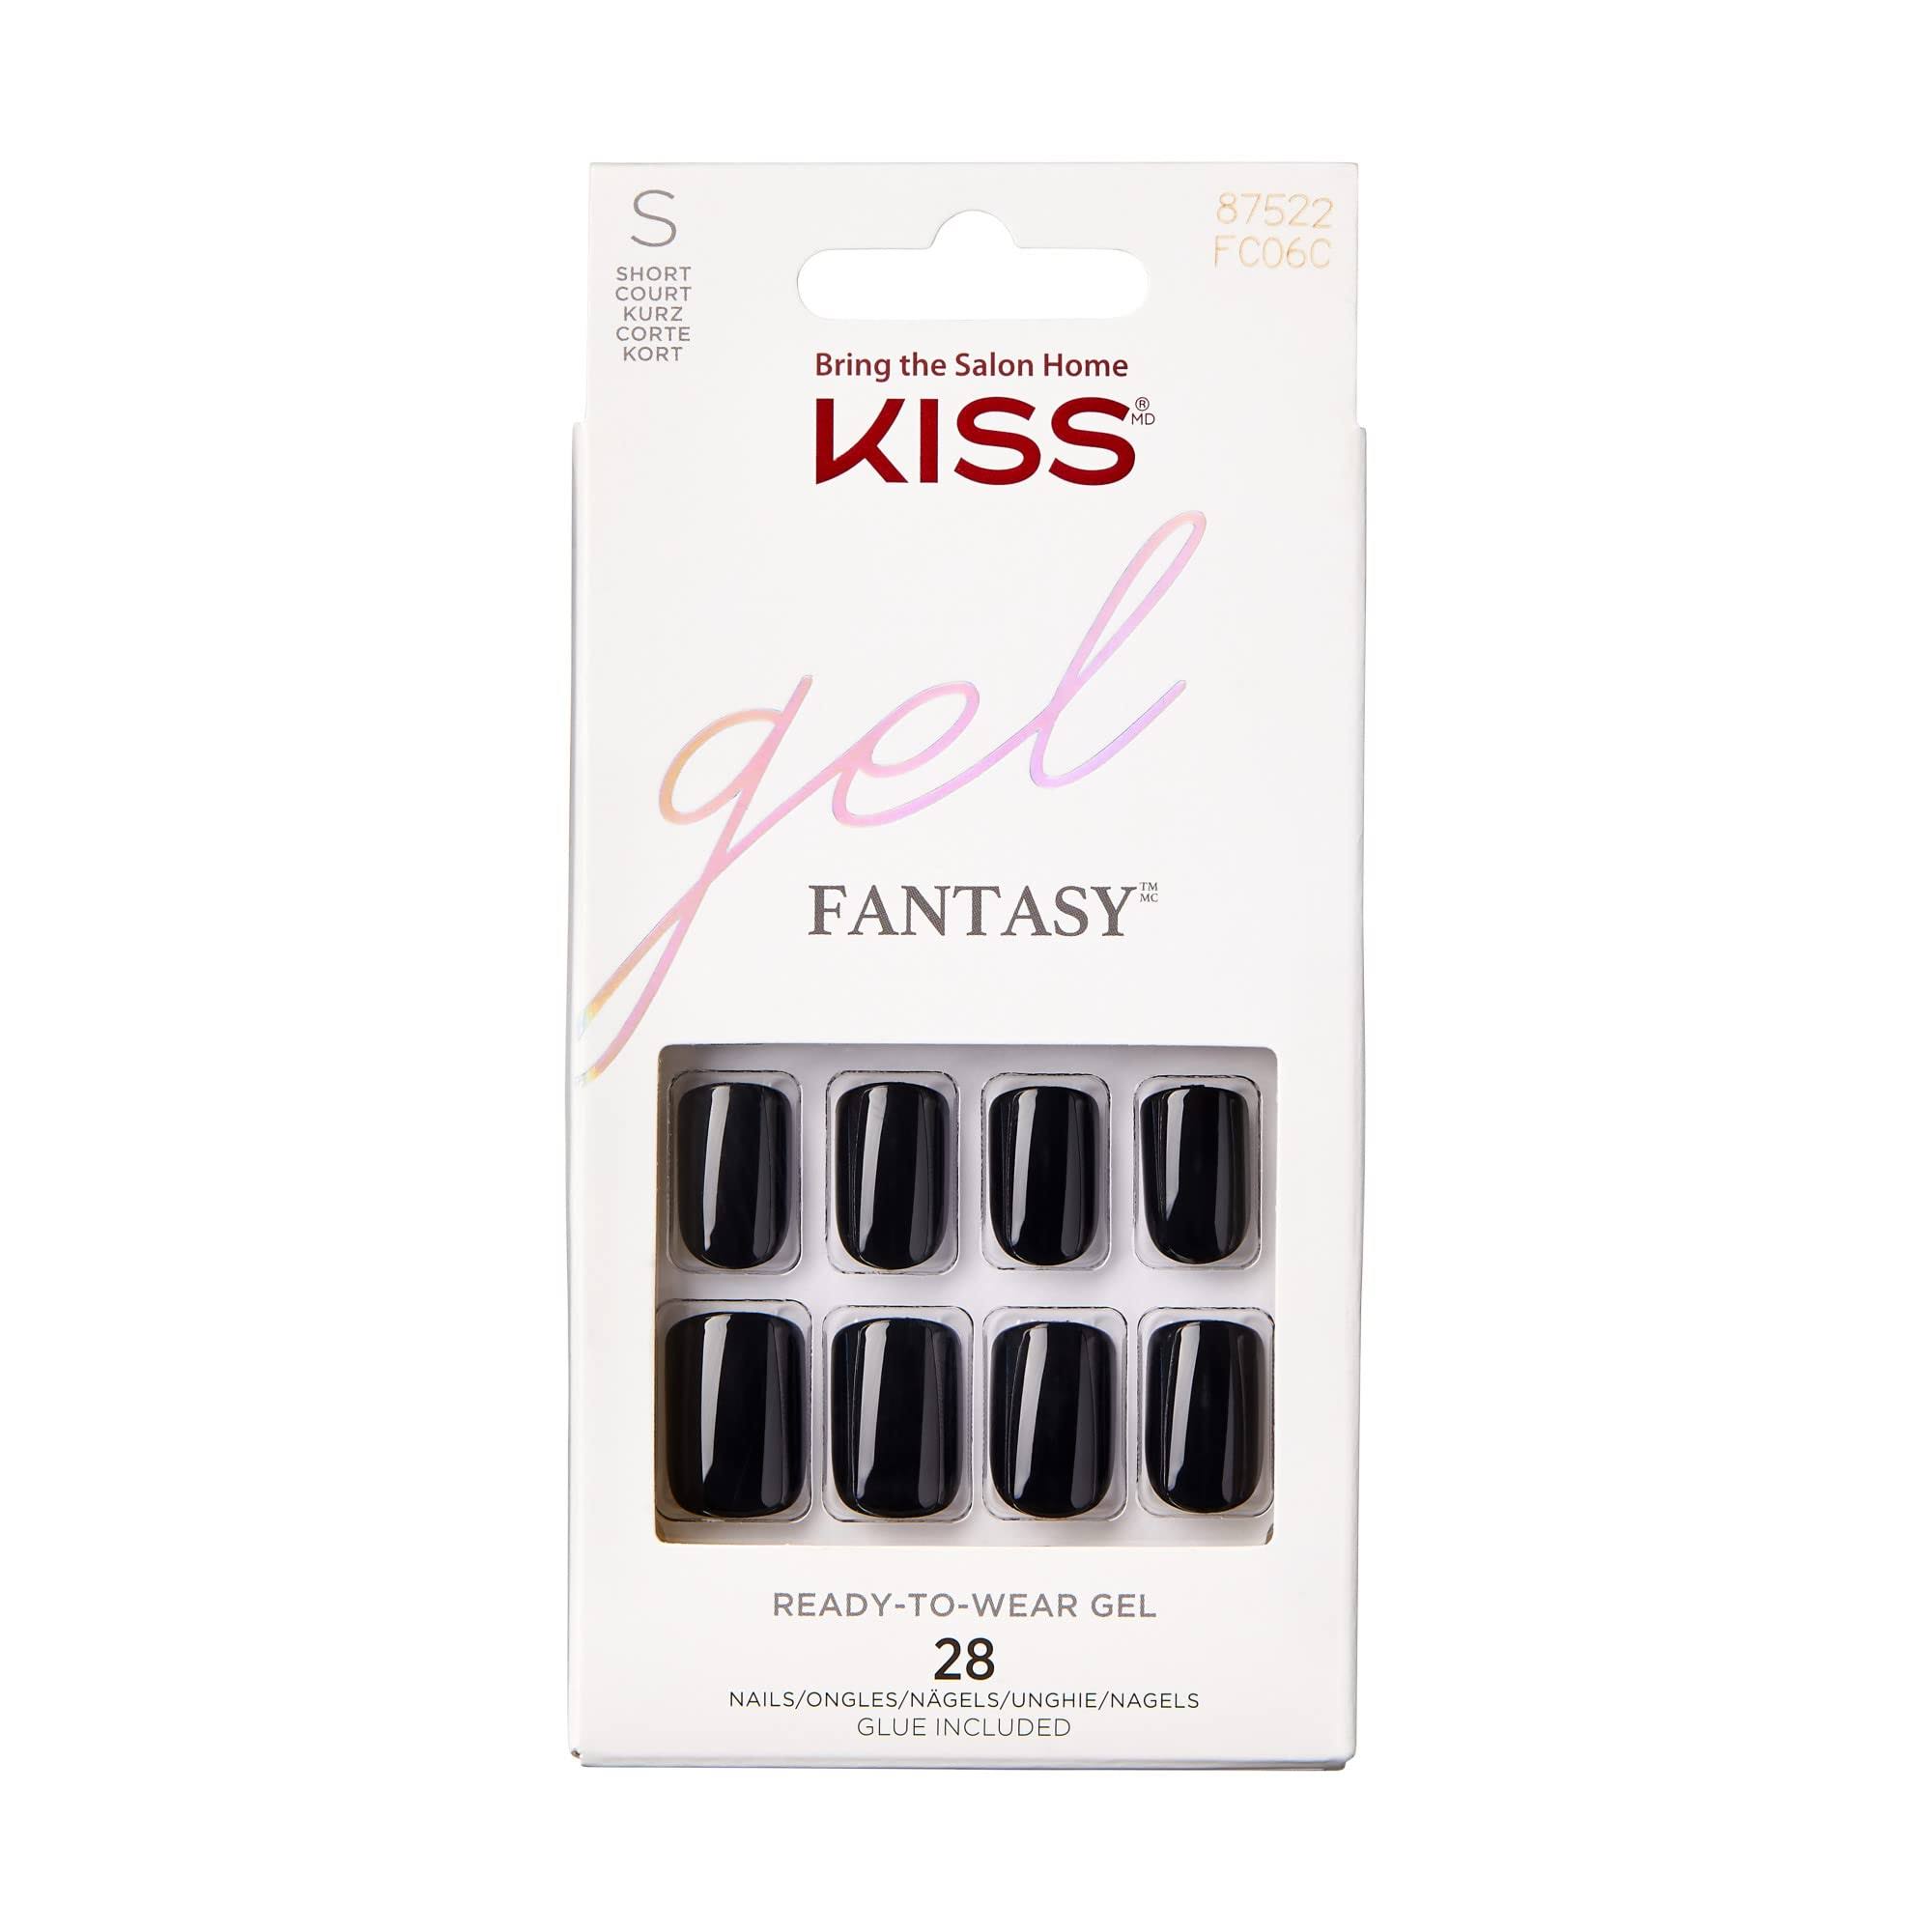 Kiss Gel Fantasy Nails- No Regret